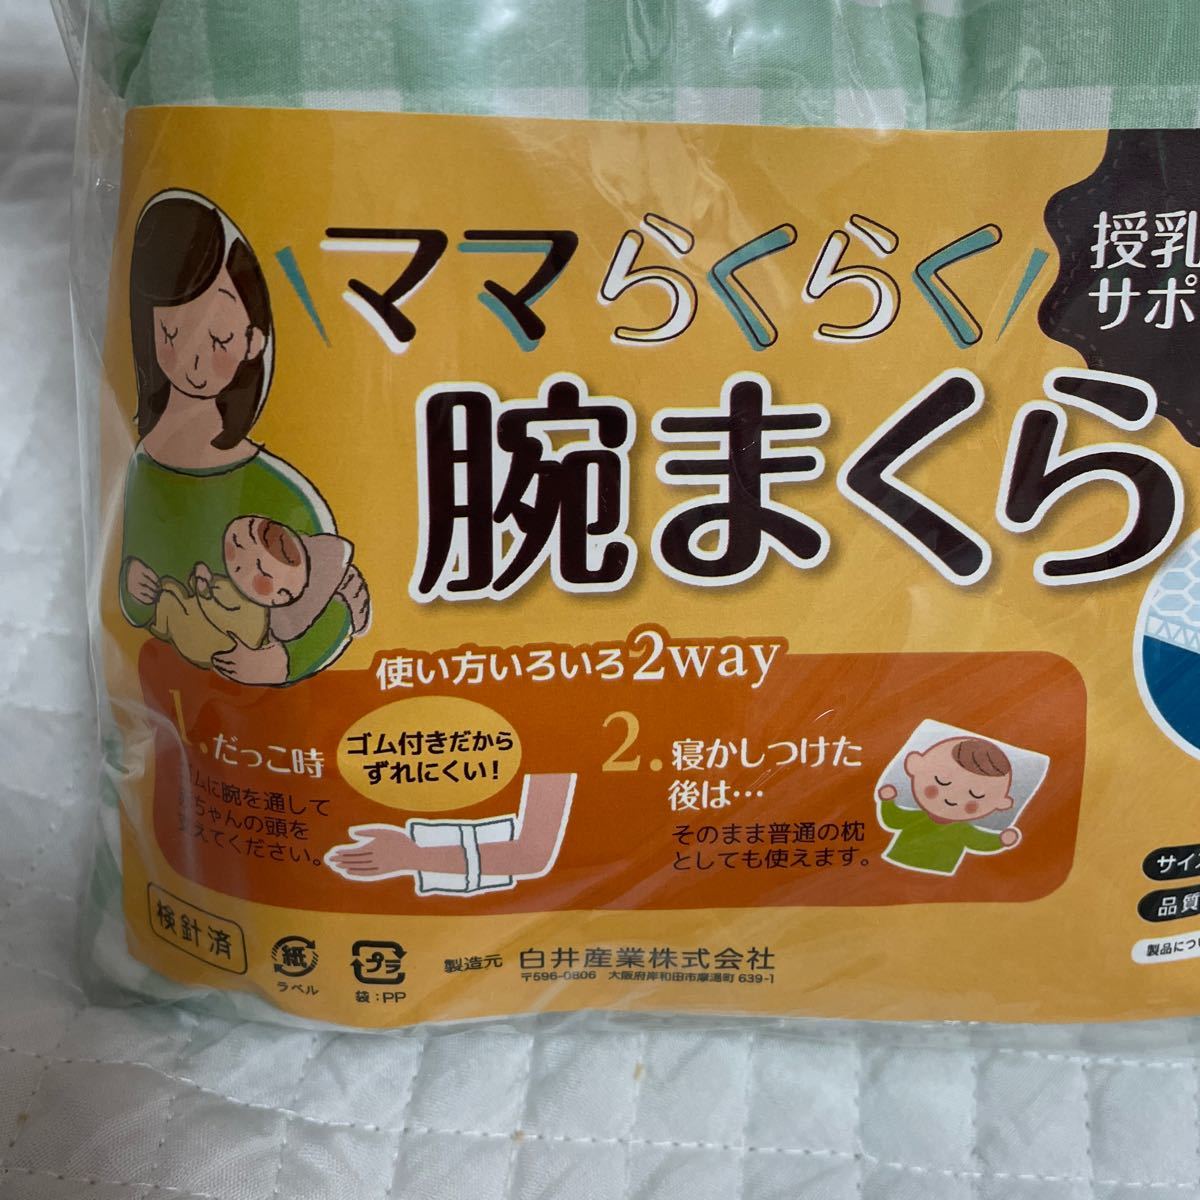  новый товар детская подушка мама удобно рука ... сделано в Японии не использовался кормление час. поддержка .2way круг мытье OK проверка зеленый белый 